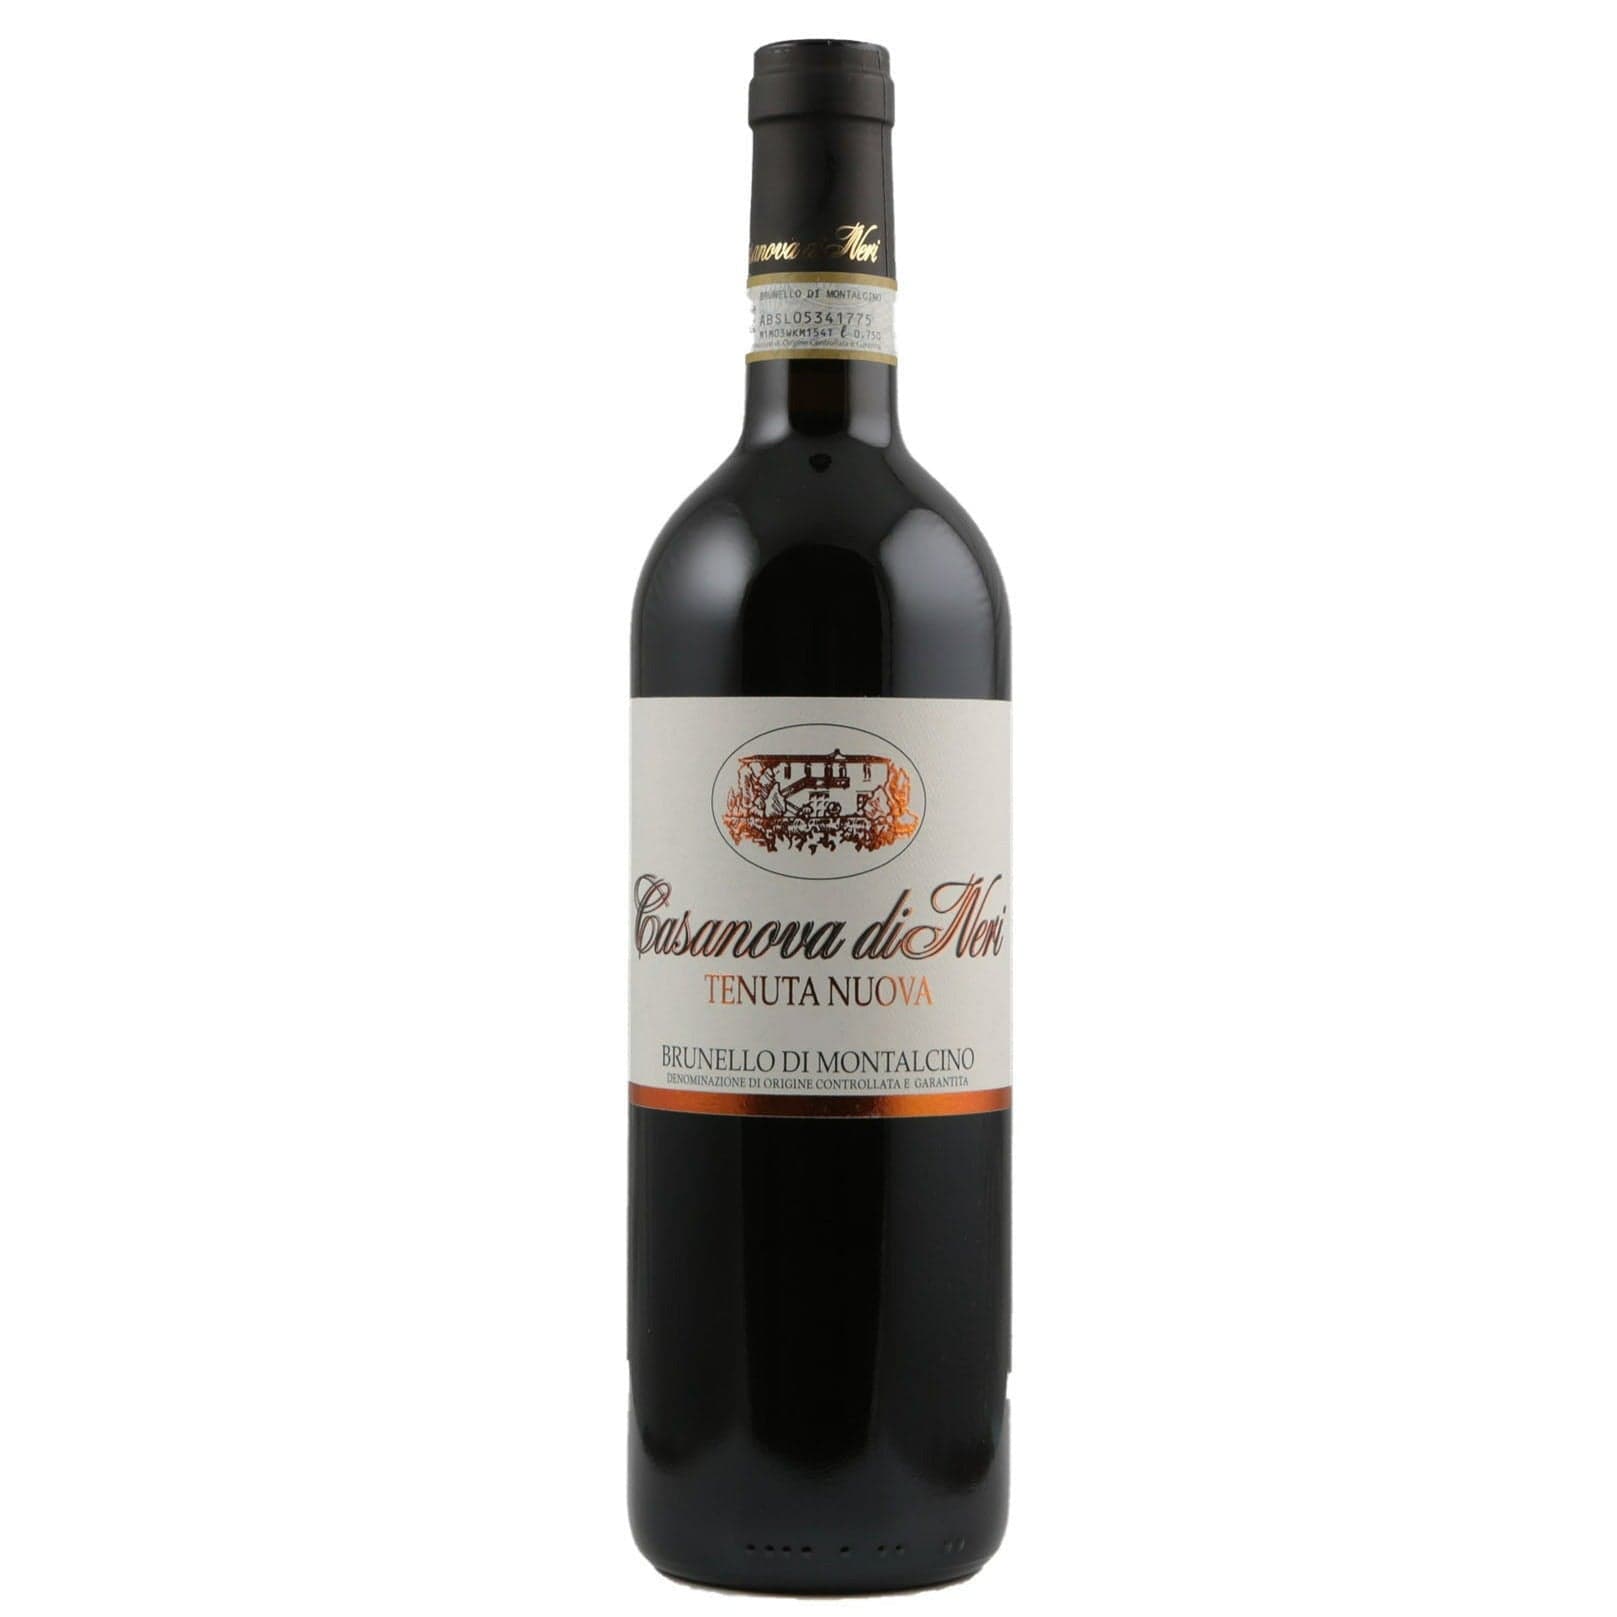 Single bottle of Red wine Casanova di Neri, Tenuta Nuova, Brunello di Montalcino, 2010 100% Sangiovese